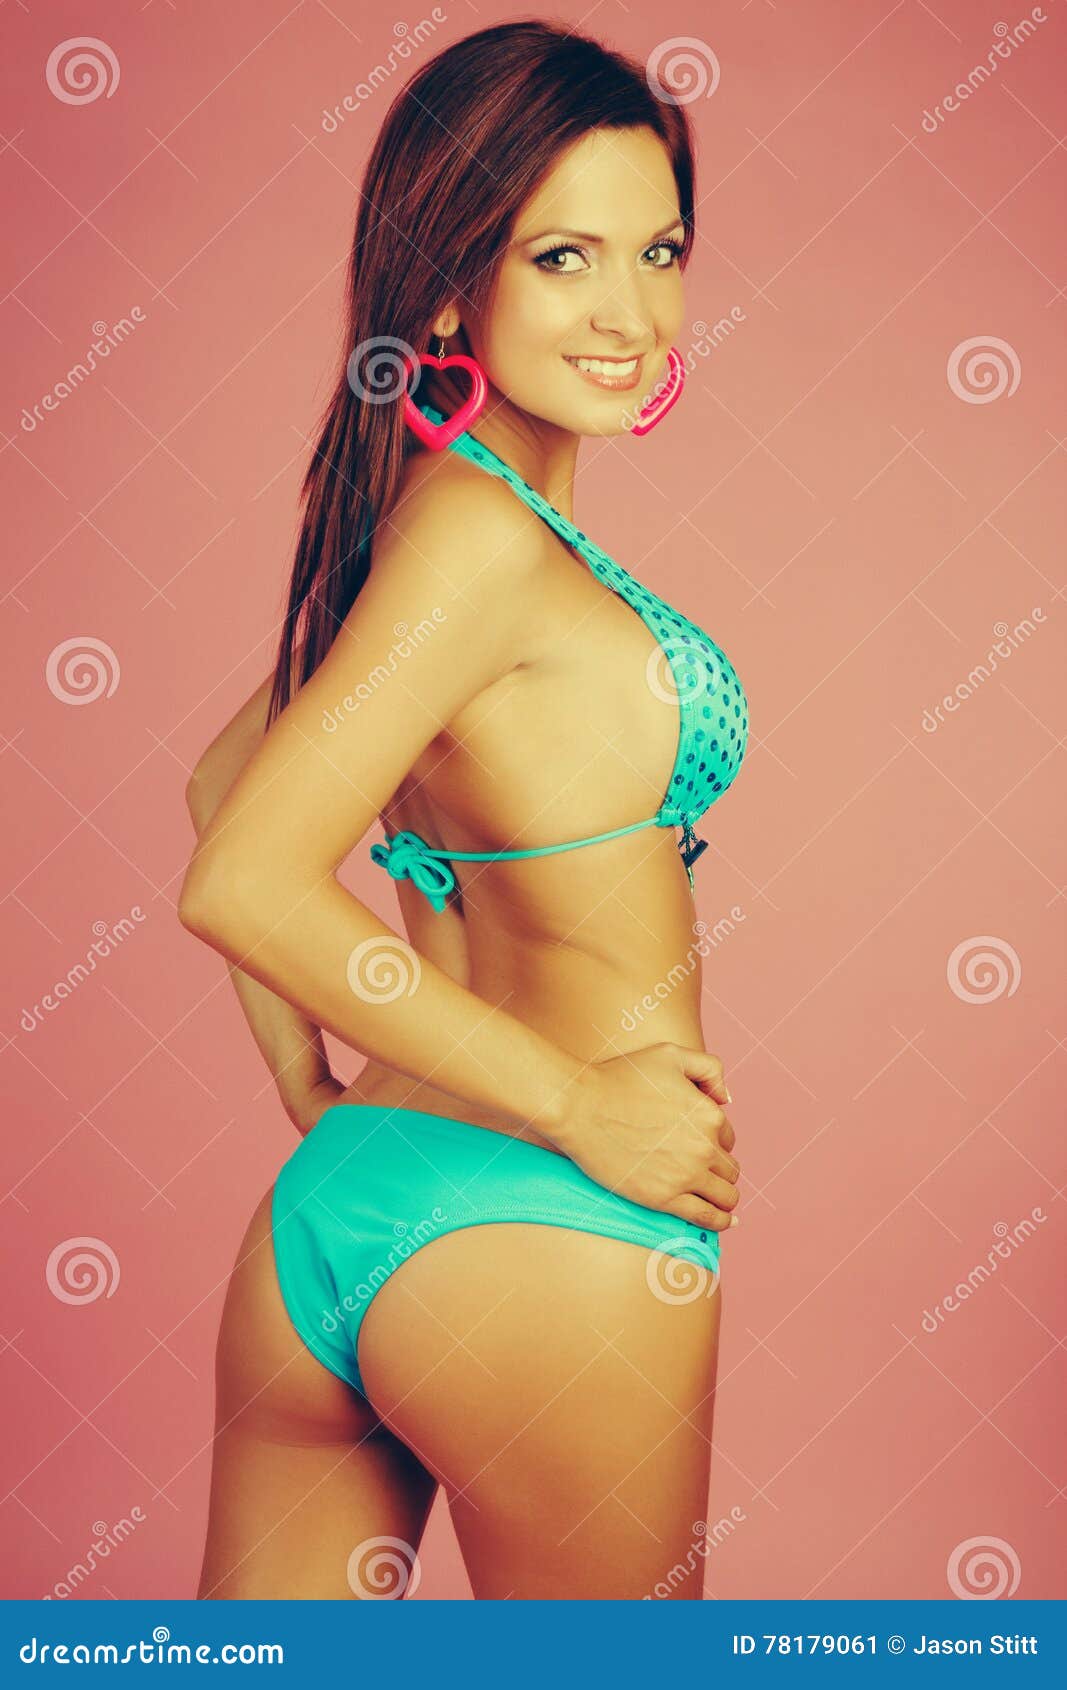 antwan steele add hot redhead in bikini photo